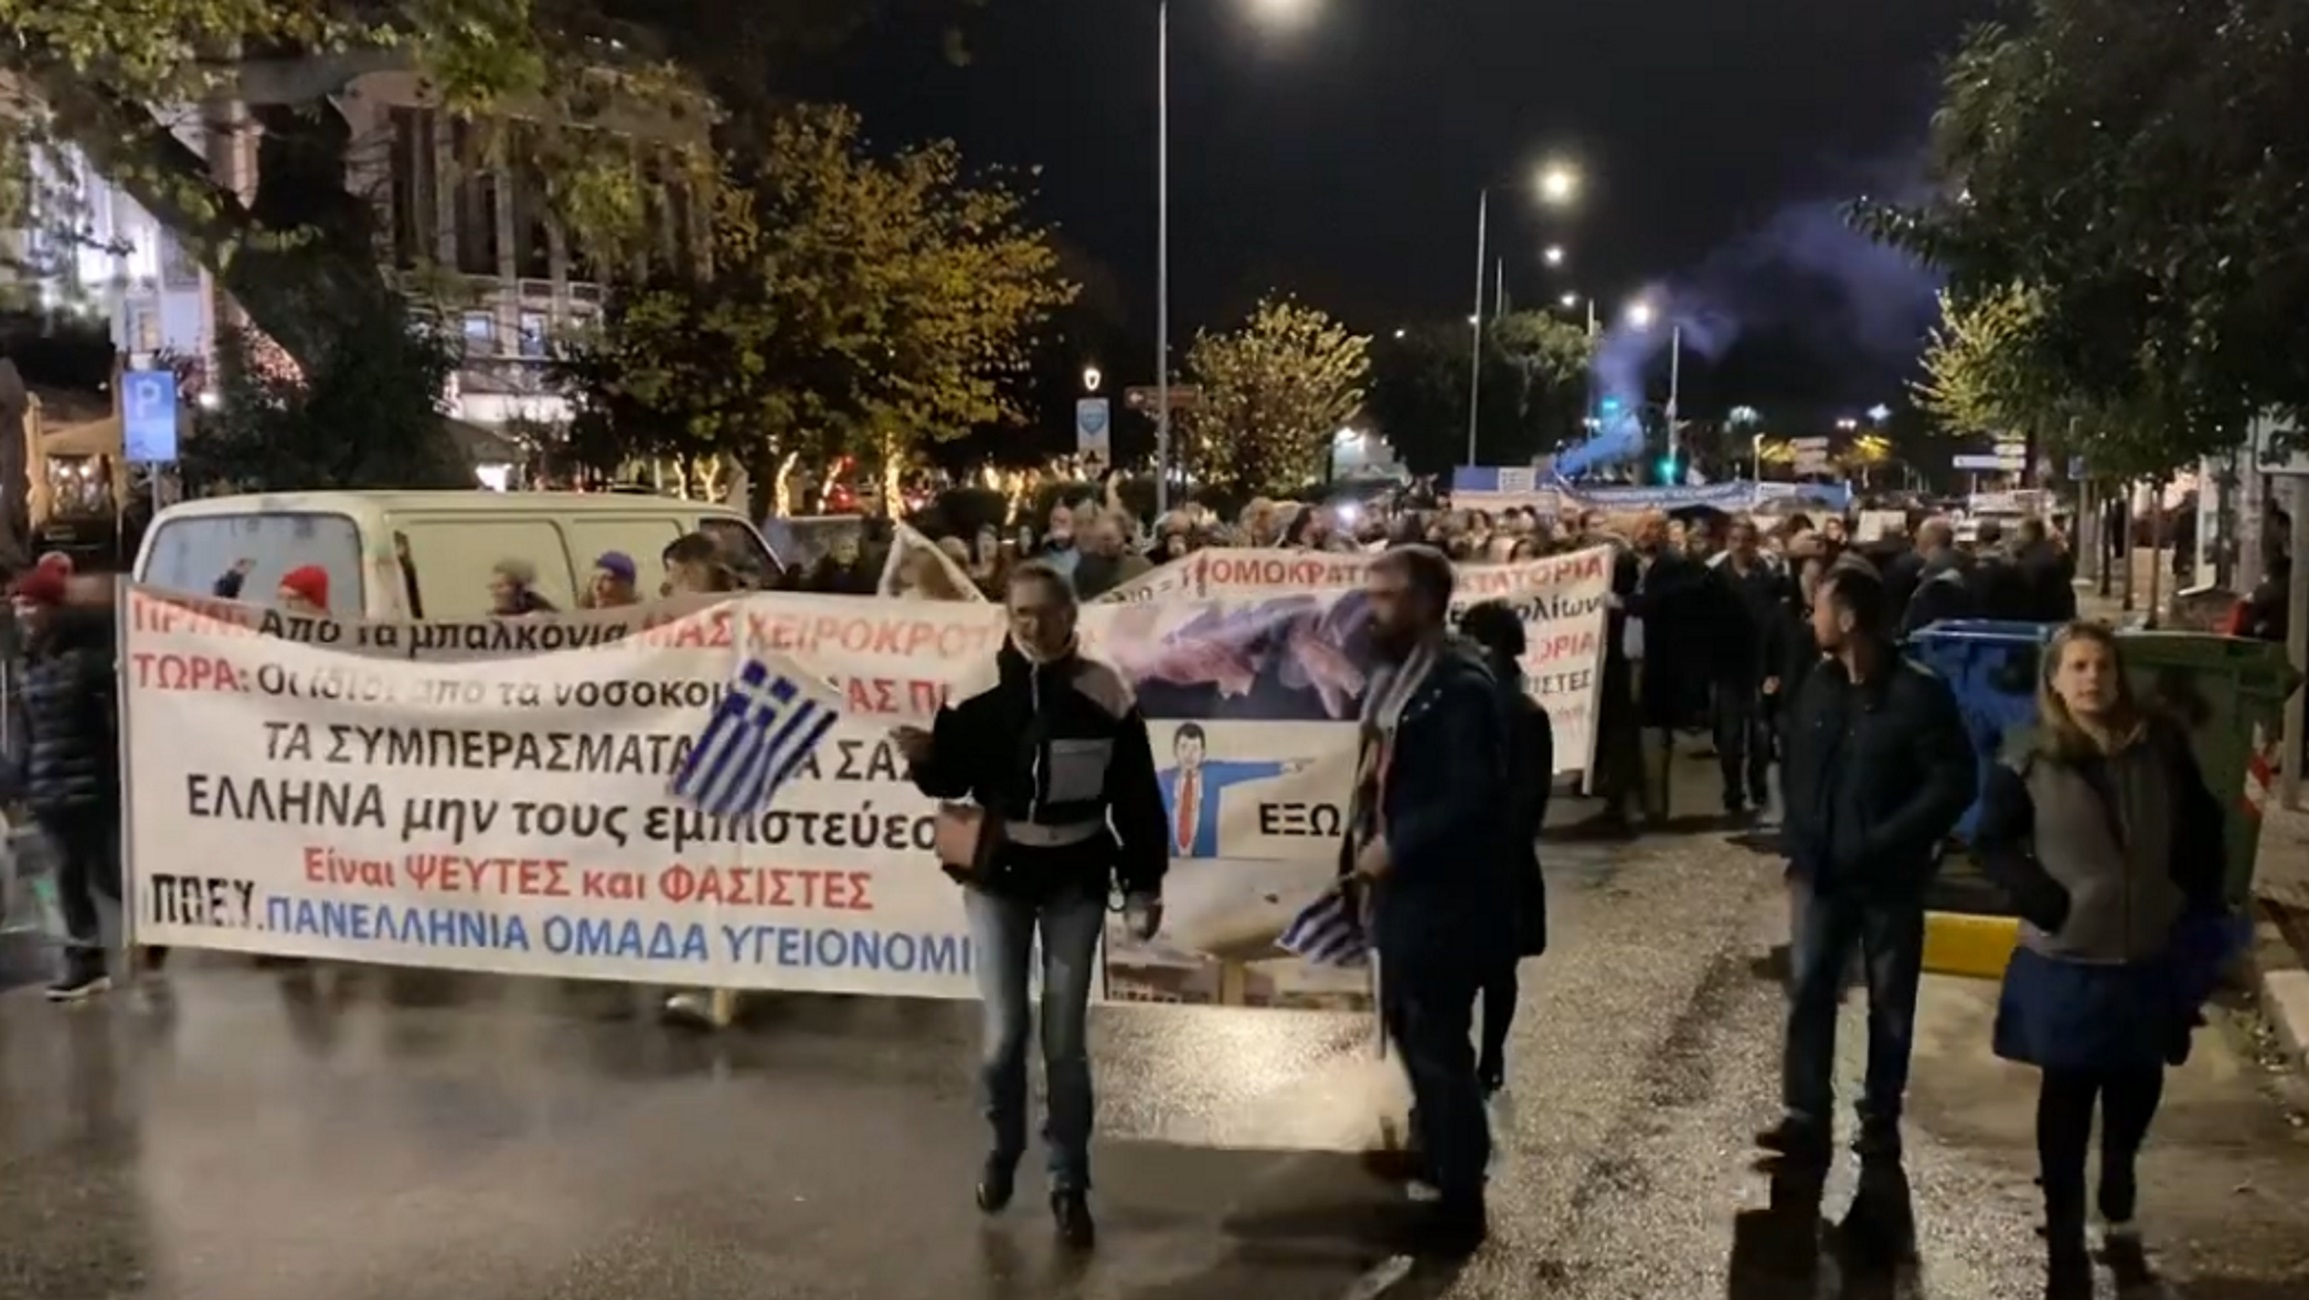 Θεσσαλονίκη – Κορονοϊός: Πορεία αντιεμβολιαστών και υγειονομικών που βγήκαν σε αναστολή